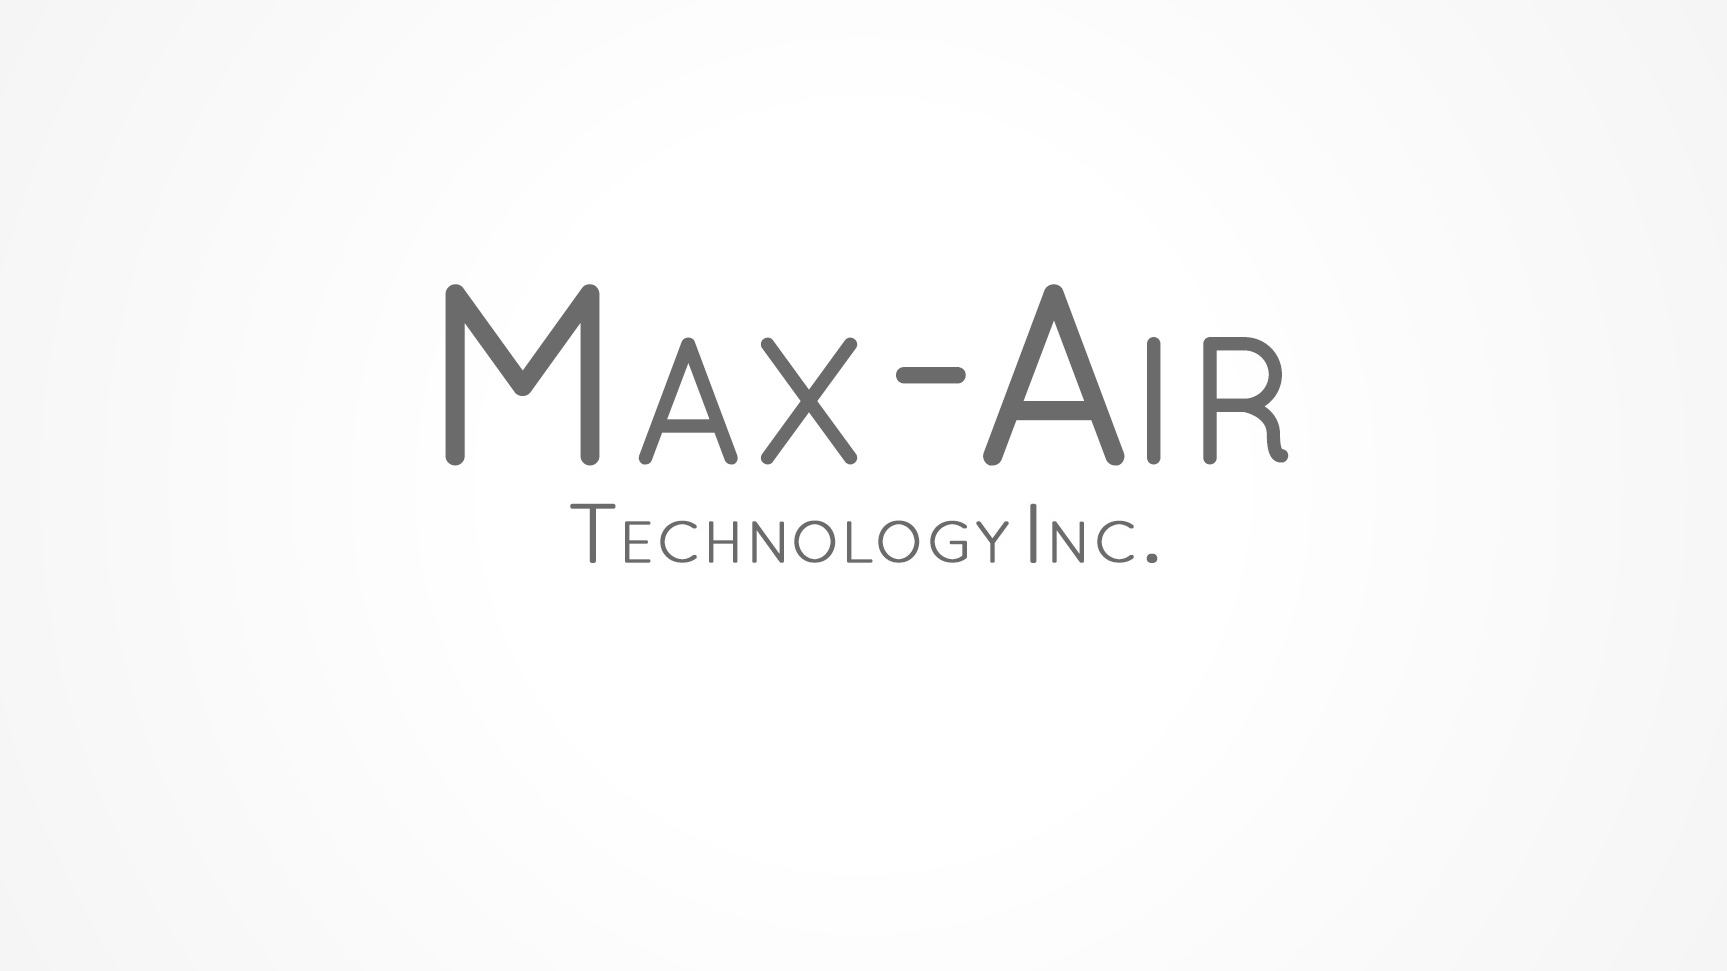 Max-Air Technology Inc.